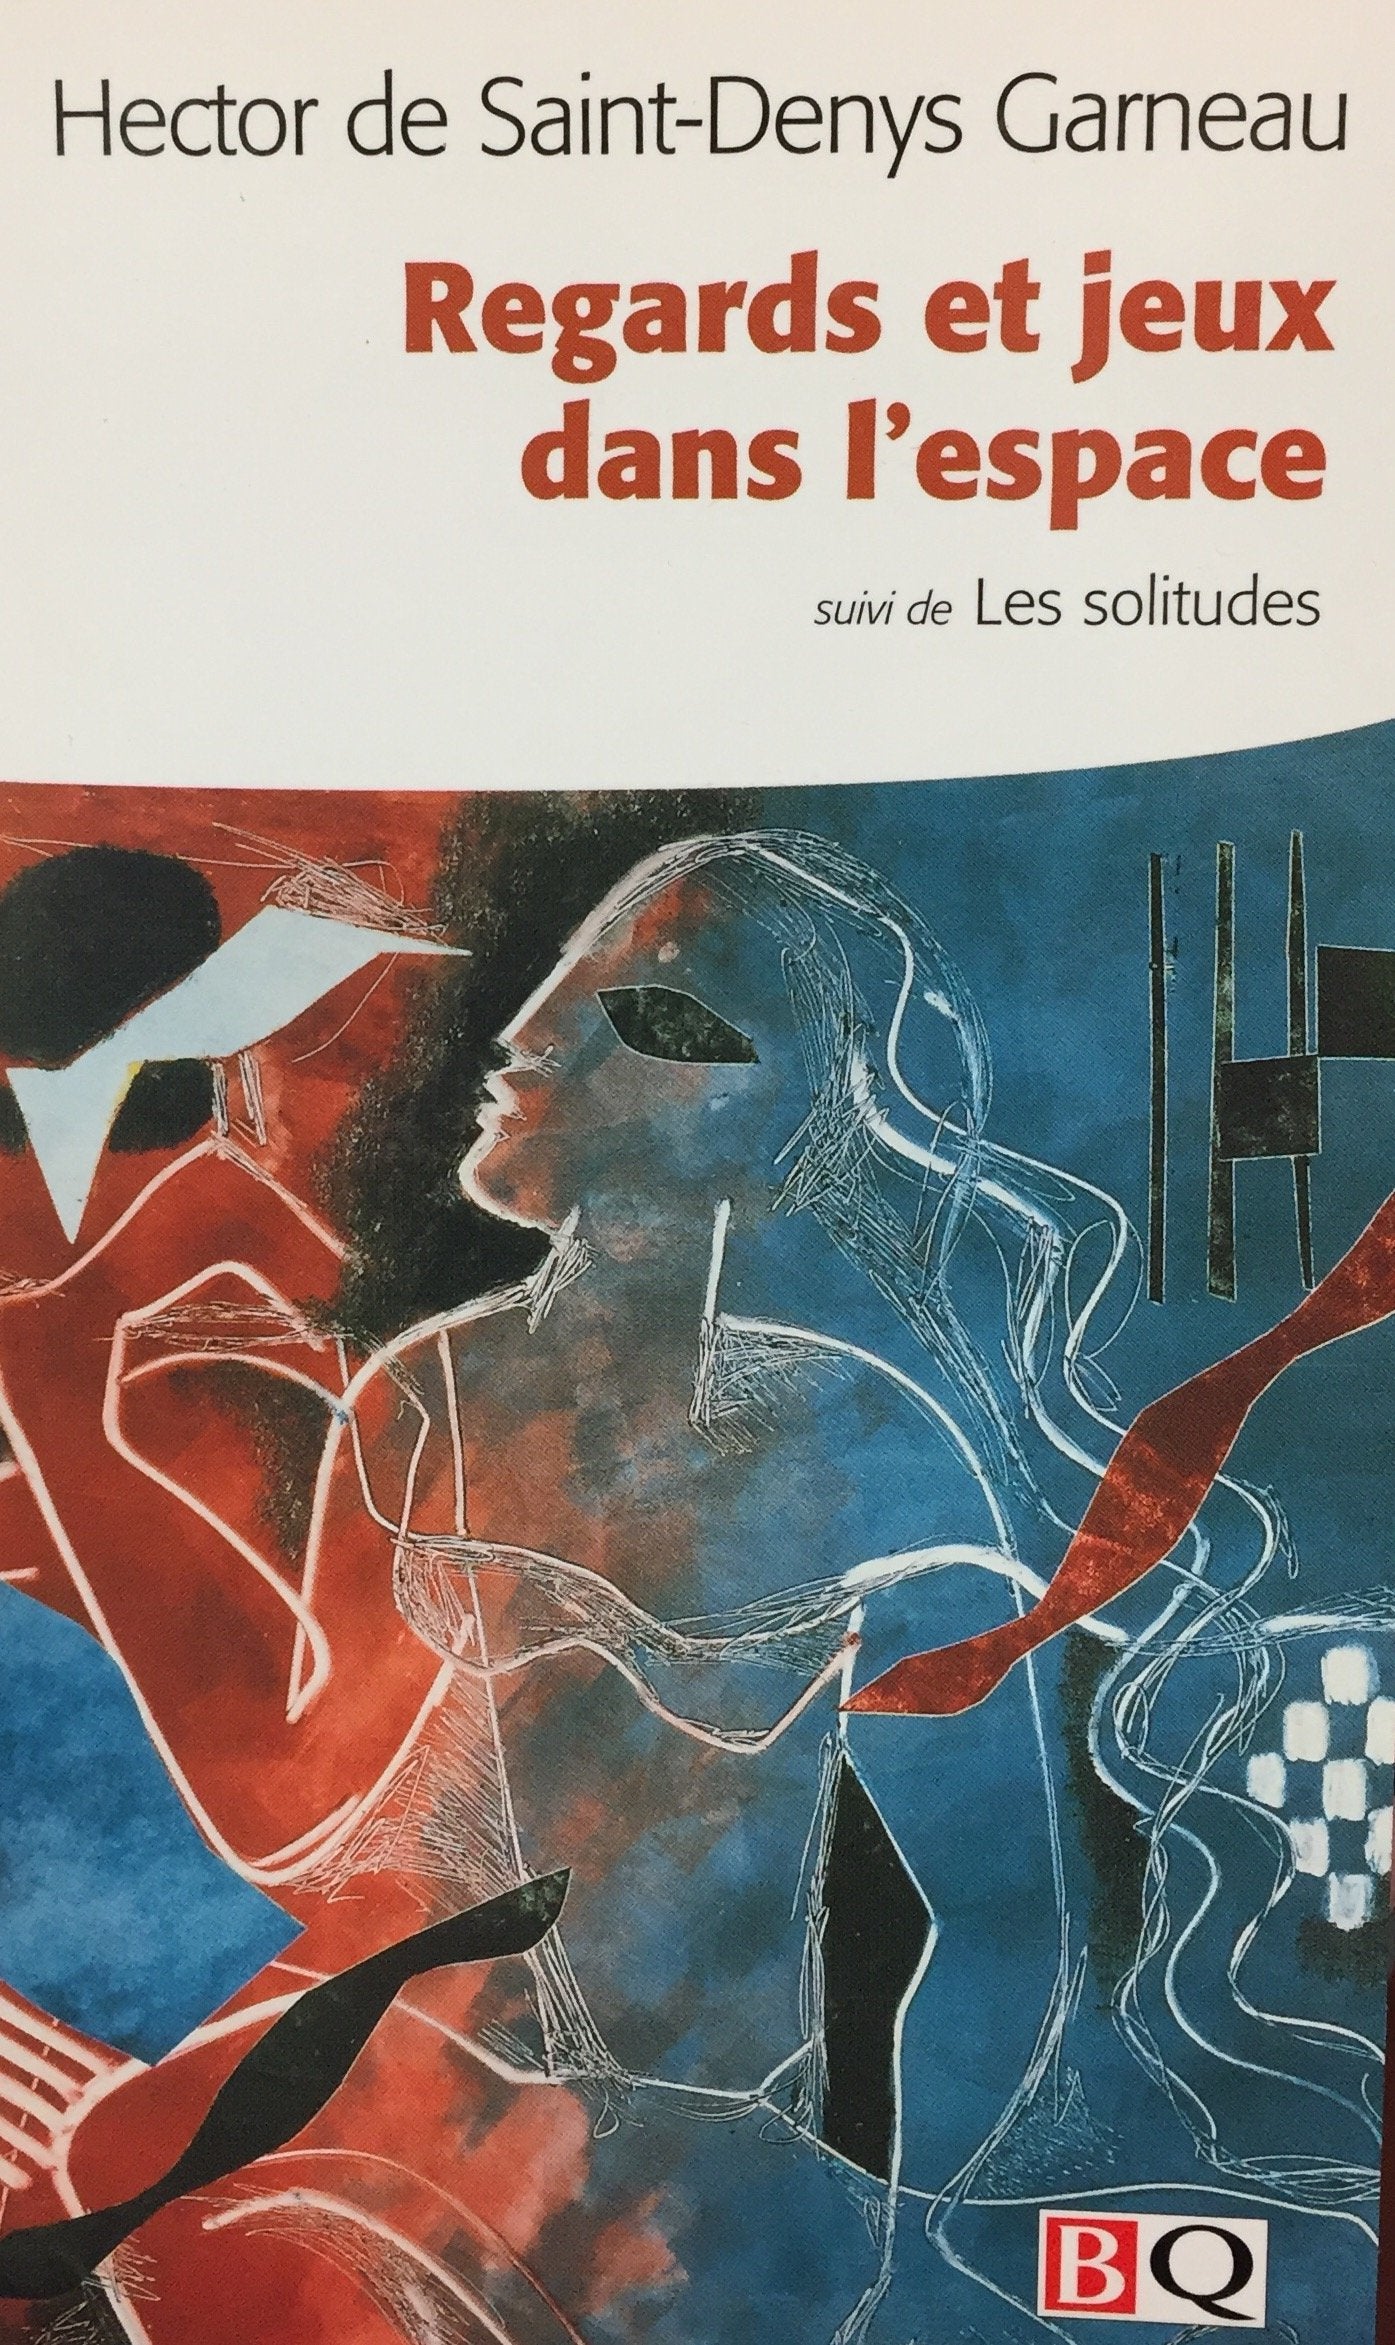 Livre ISBN 2894061714 Regards et jeux dans l'espace -suivi de- Les solitudes (Hector de Saint-Denys Garneau)